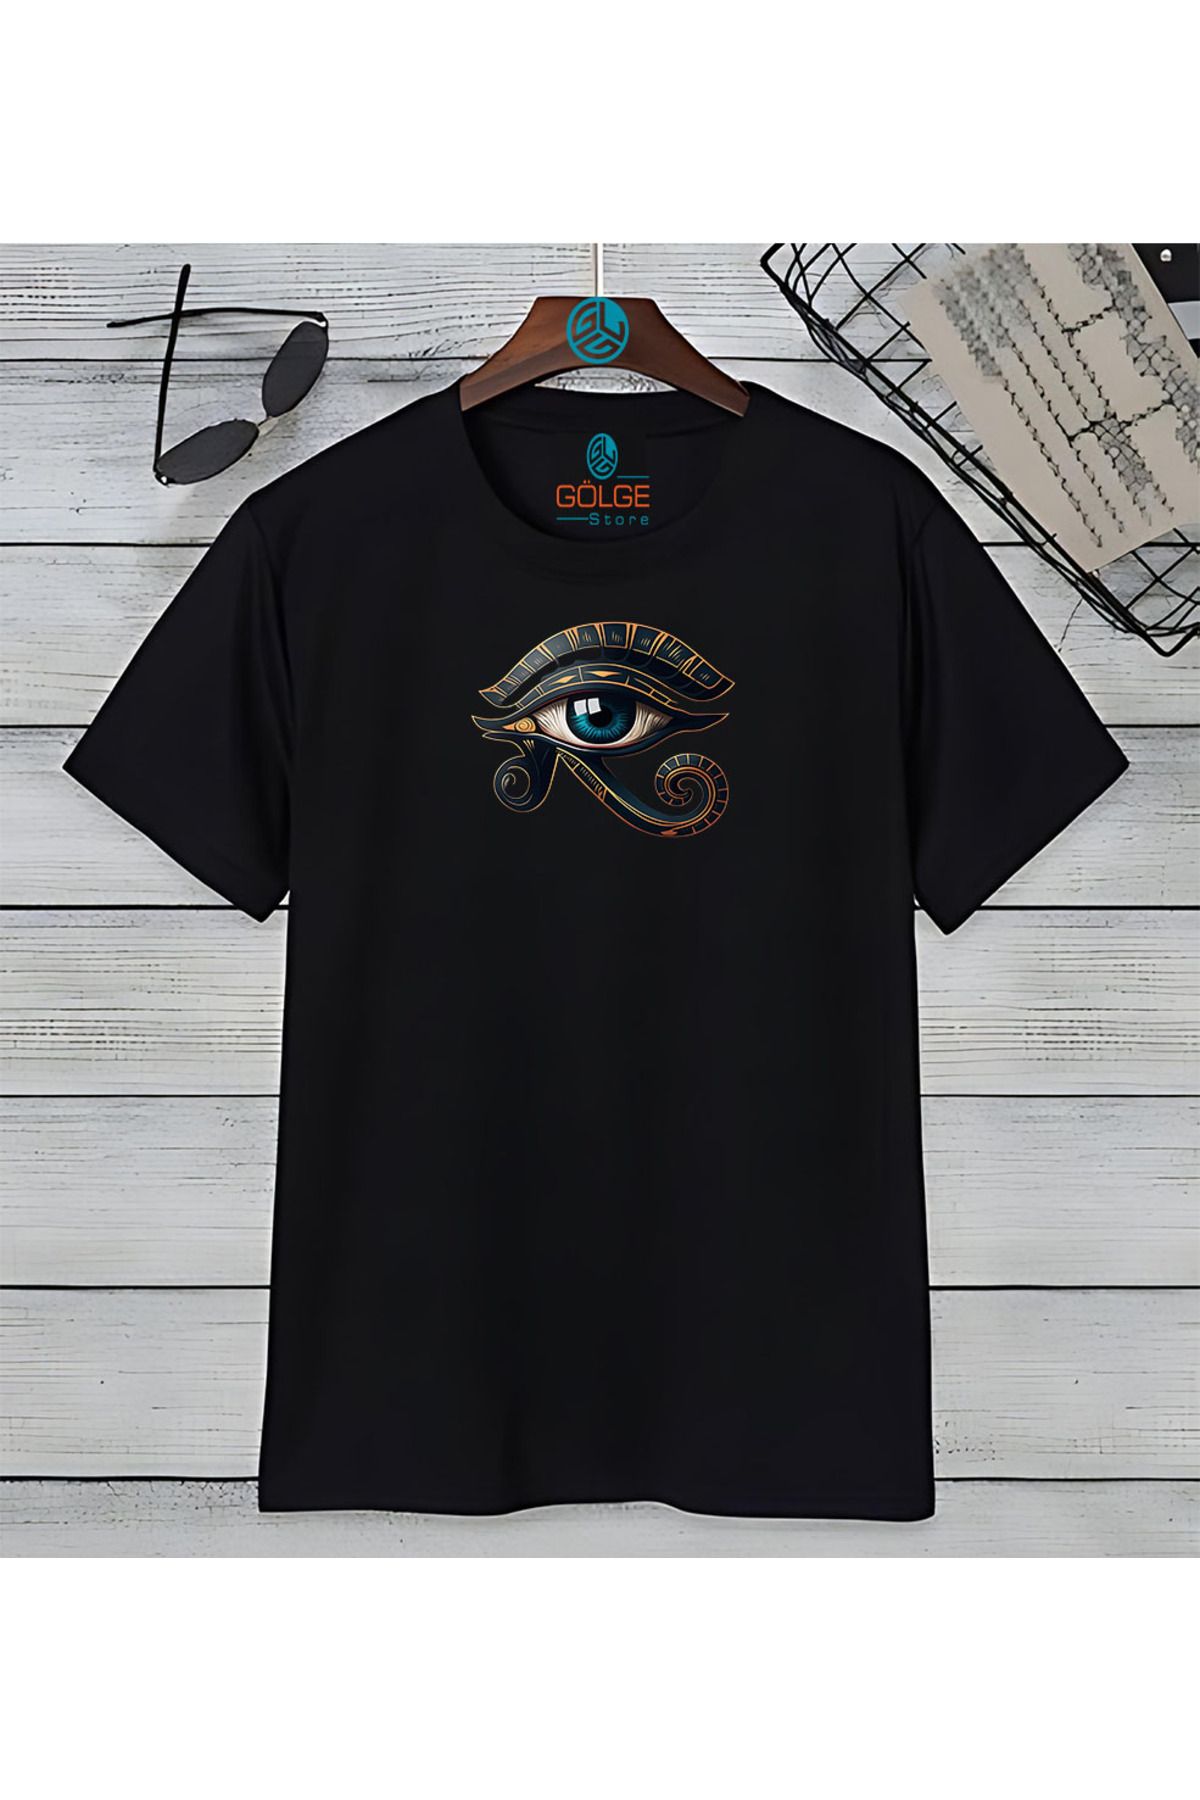 Gölge Store Astroloji Gözü Göğüs Baskılı Oversize Unisex Tişört